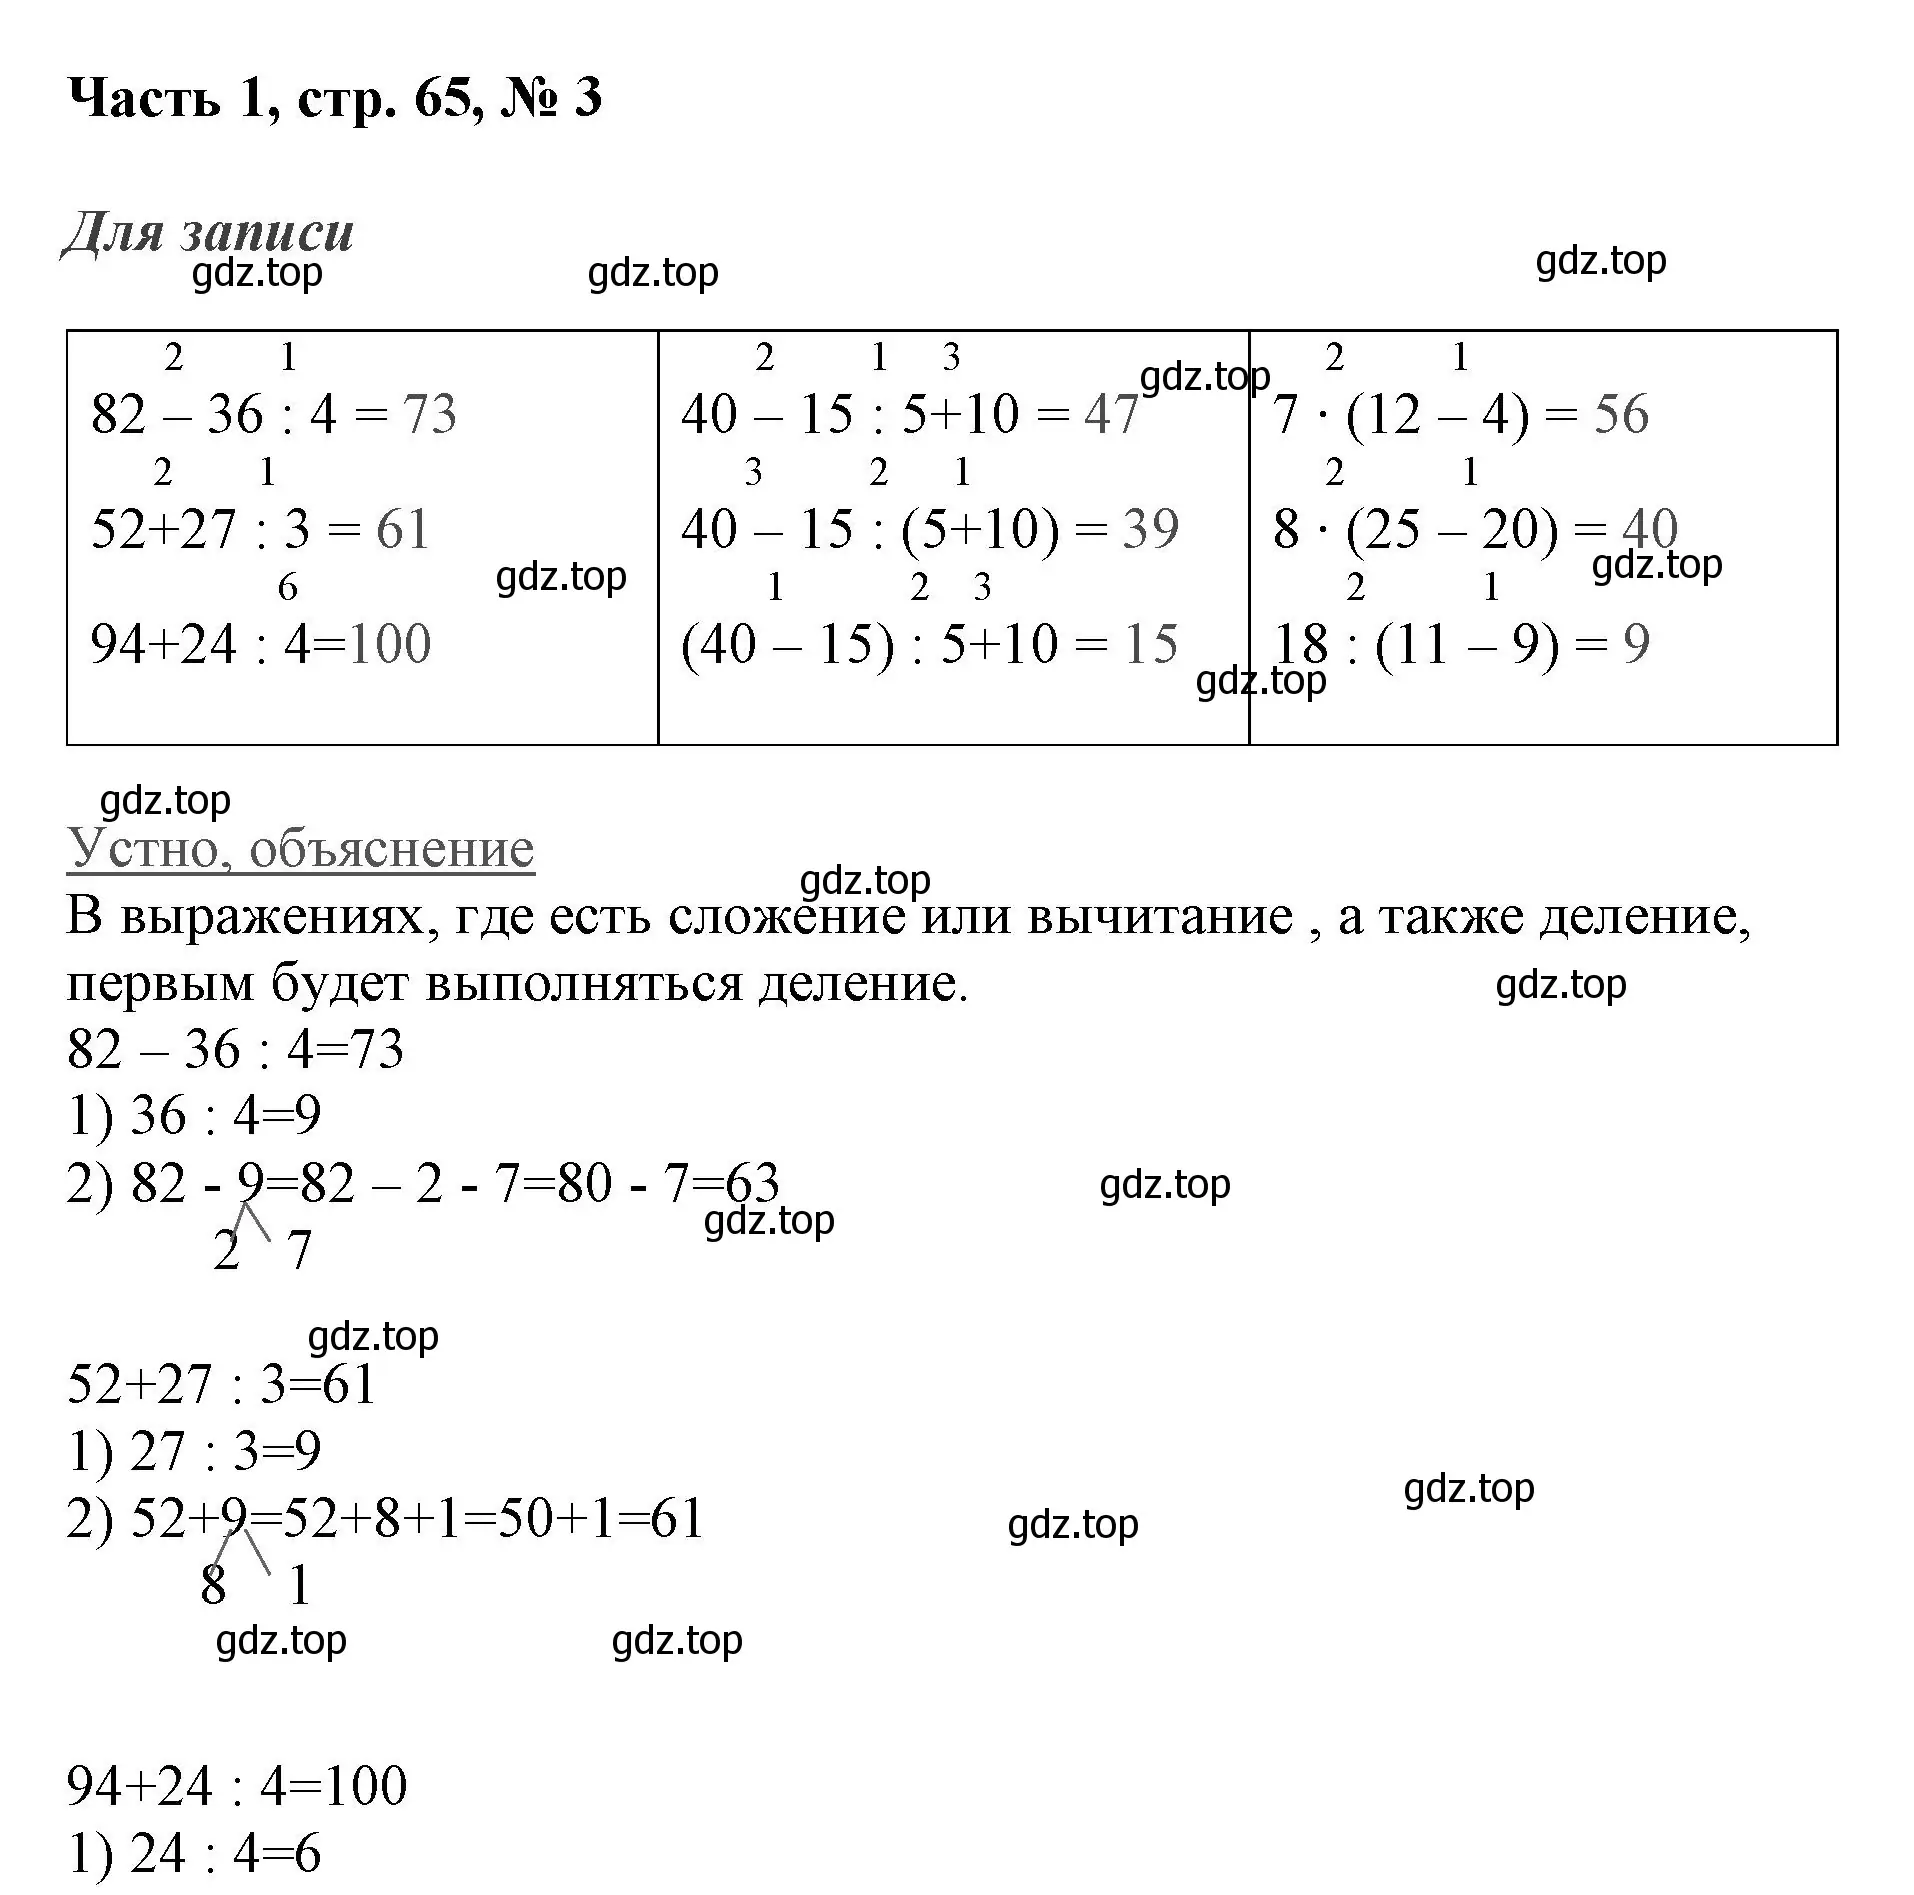 Решение номер 3 (страница 65) гдз по математике 3 класс Моро, Бантова, учебник 1 часть